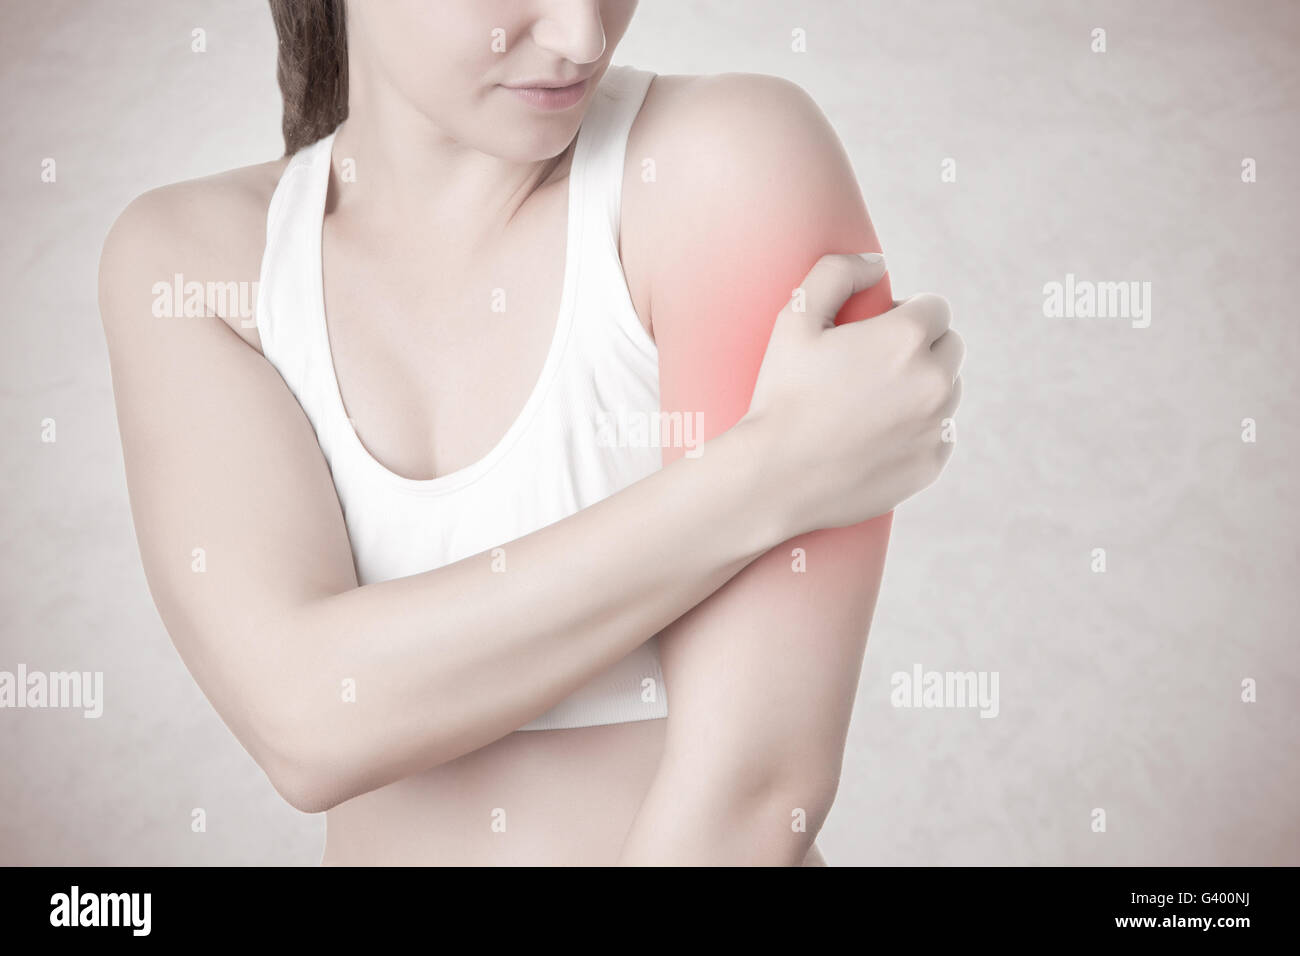 Femmina con il dolore nel suo braccio, isolato in uno sfondo grigio Foto Stock